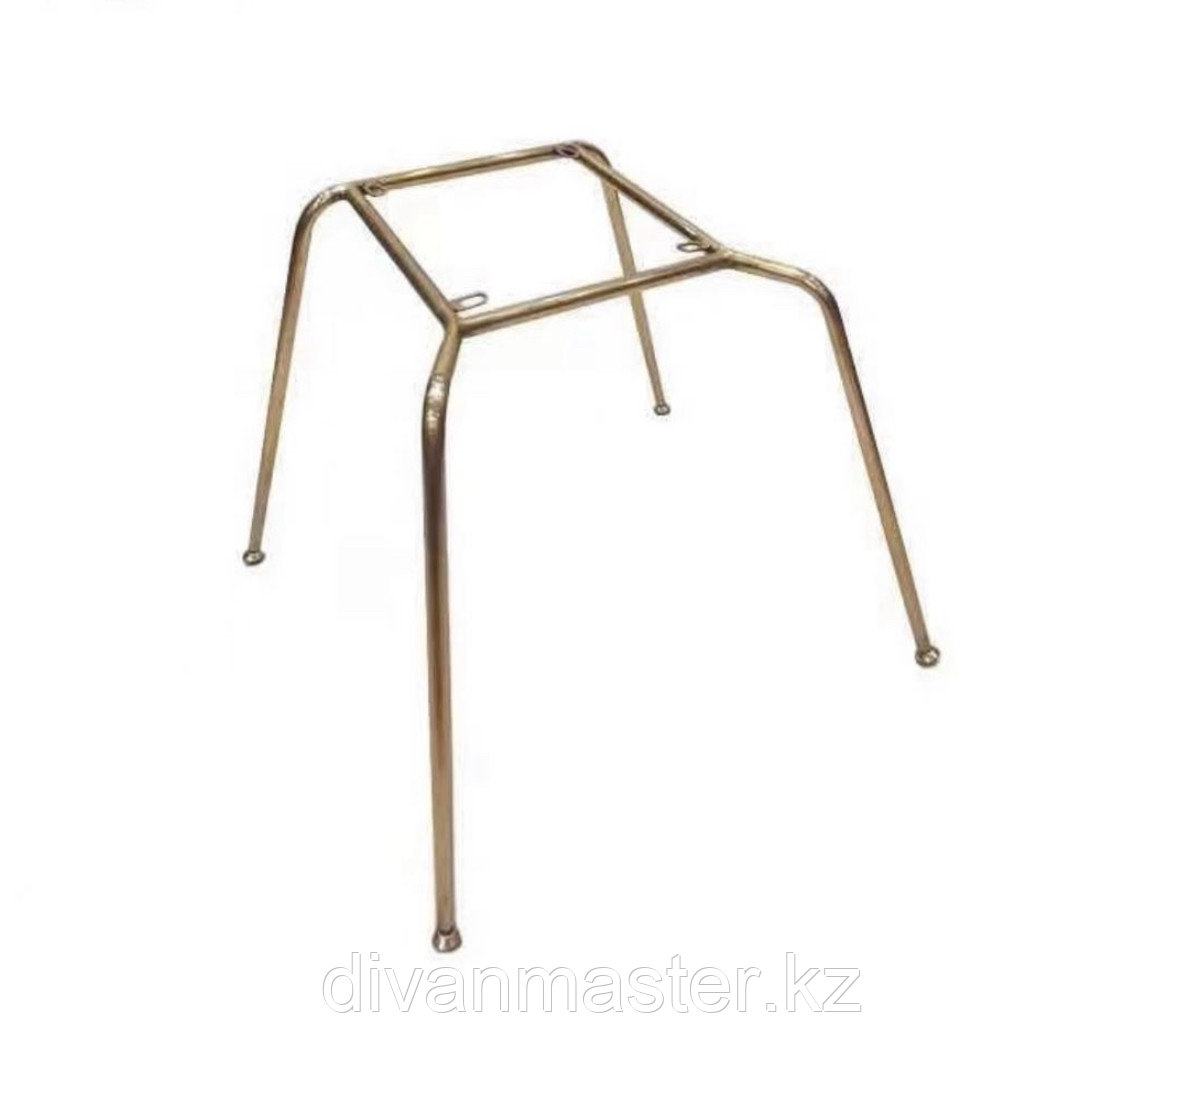 Основание стула, сталь, высота 40 см, цвет латунь, фото 1